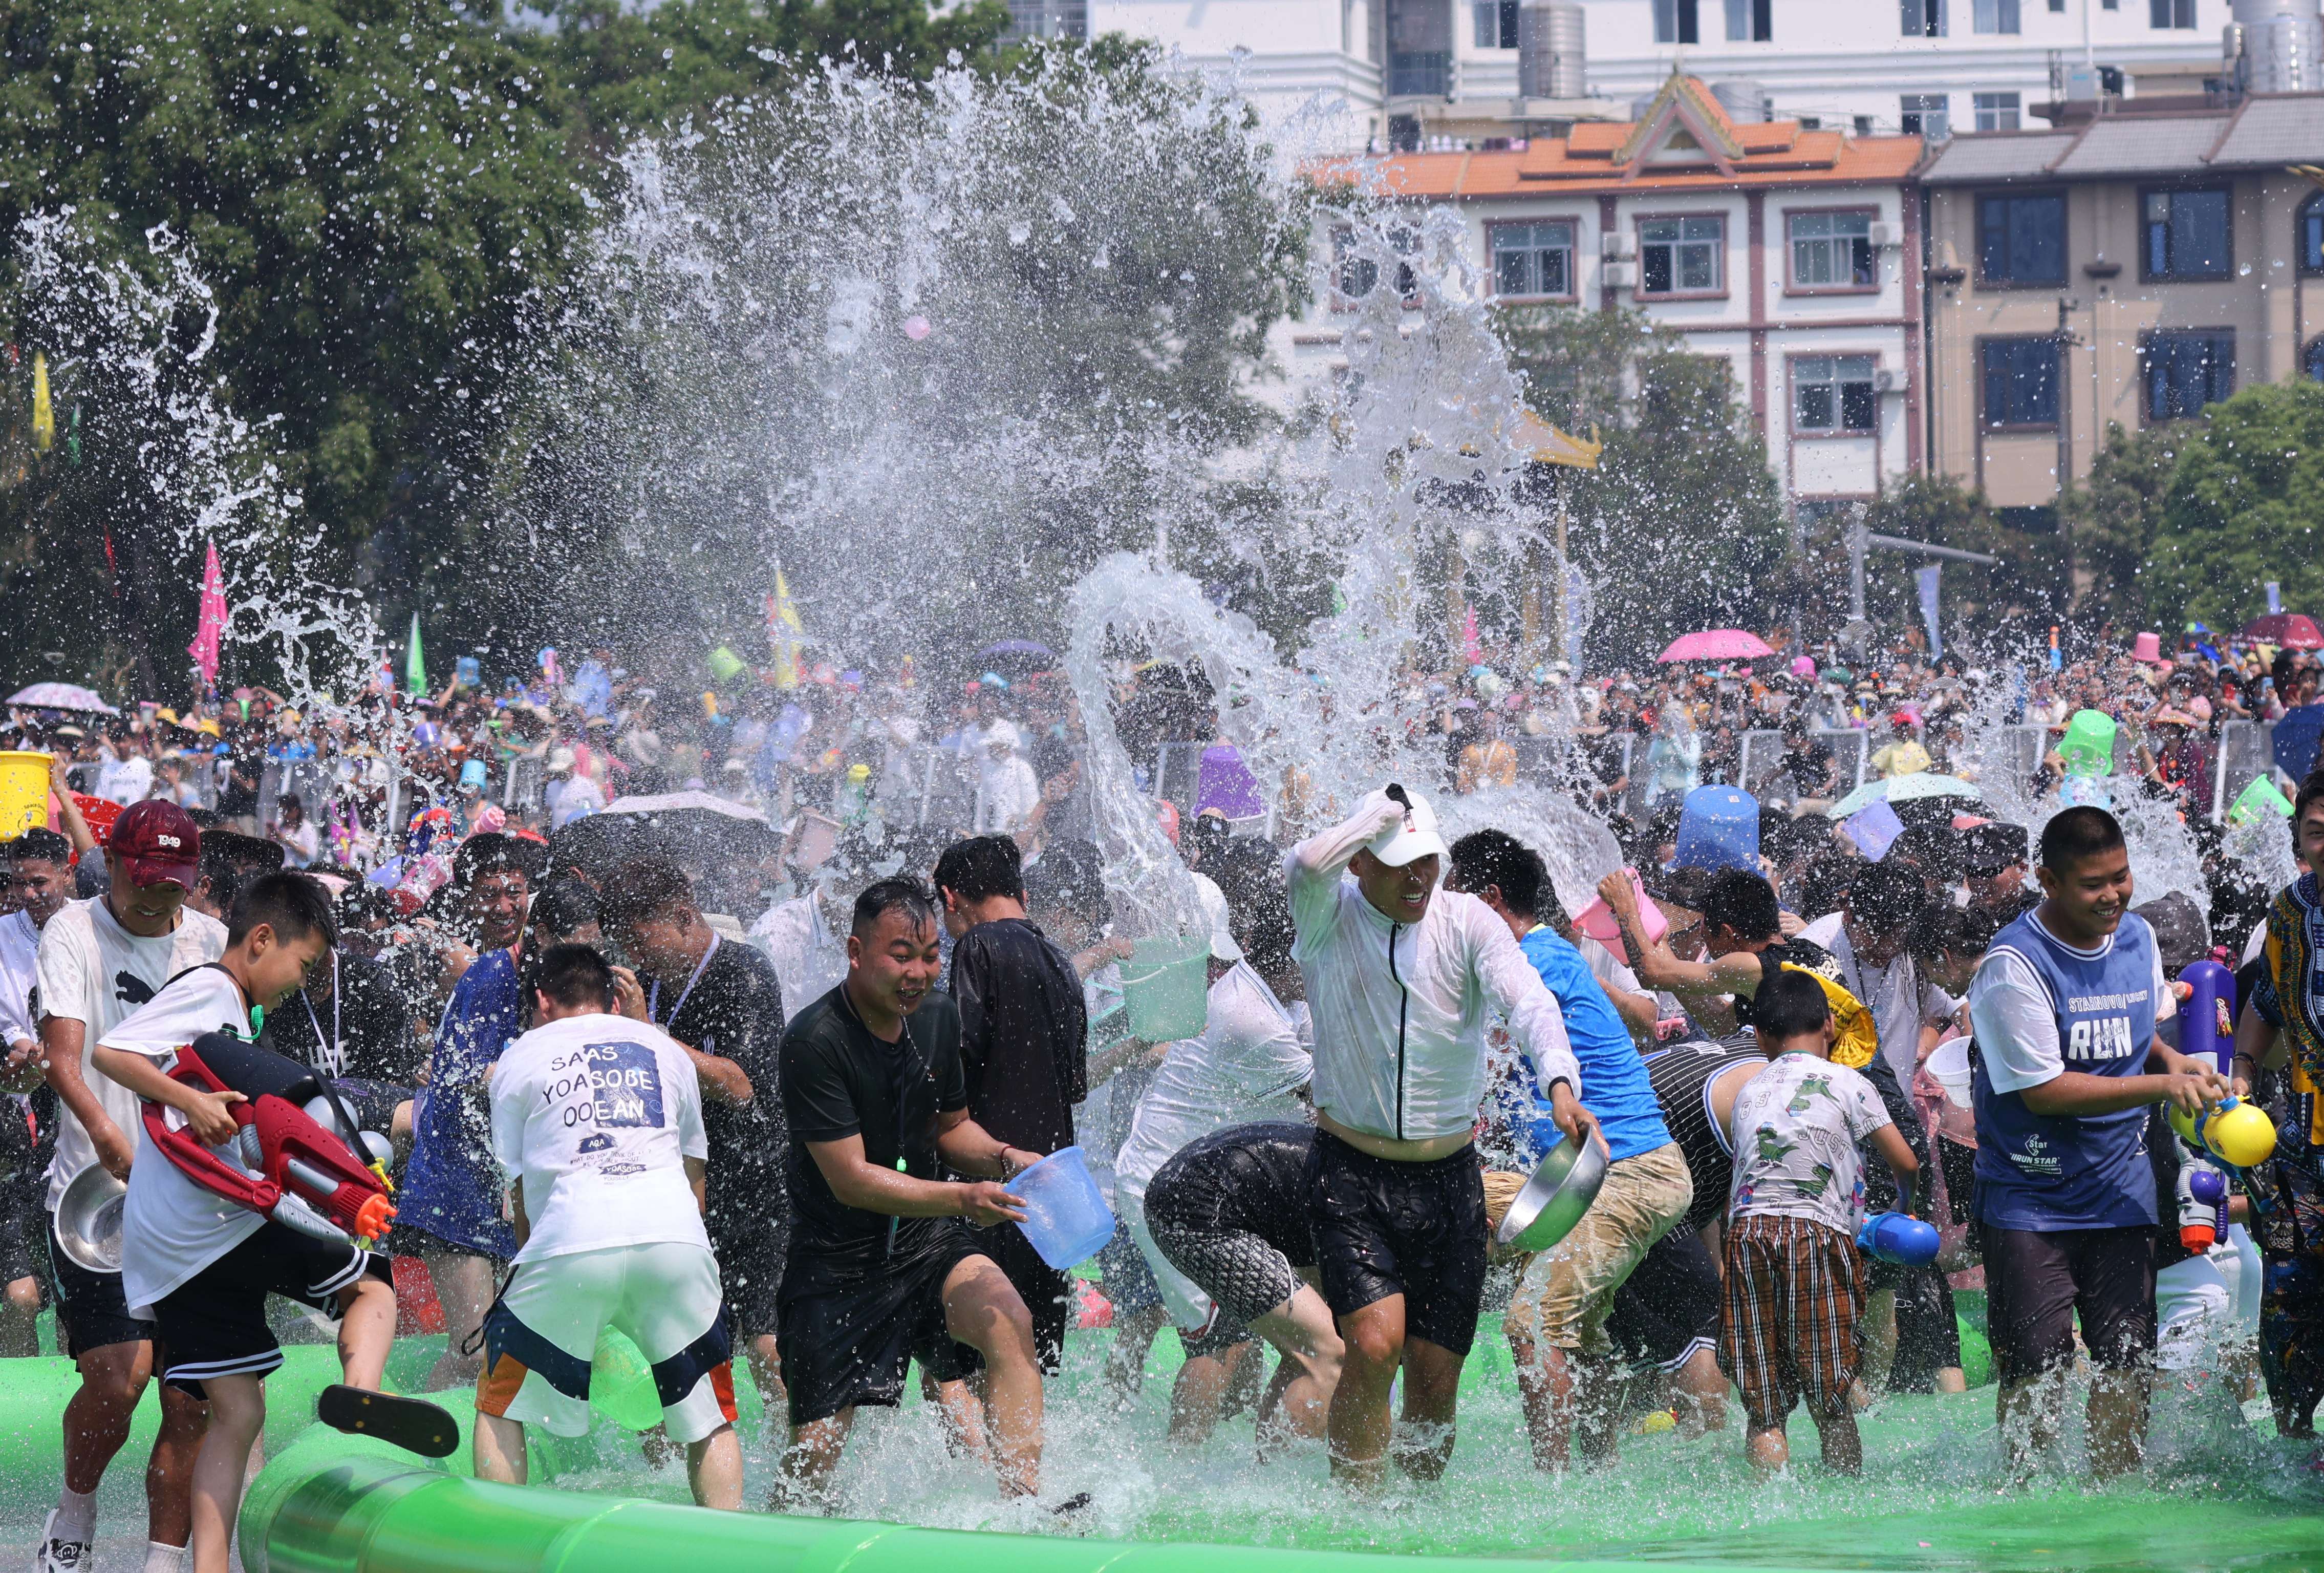 狂欢“湿身”之旅 西双版纳——与傣族欢度泼水节